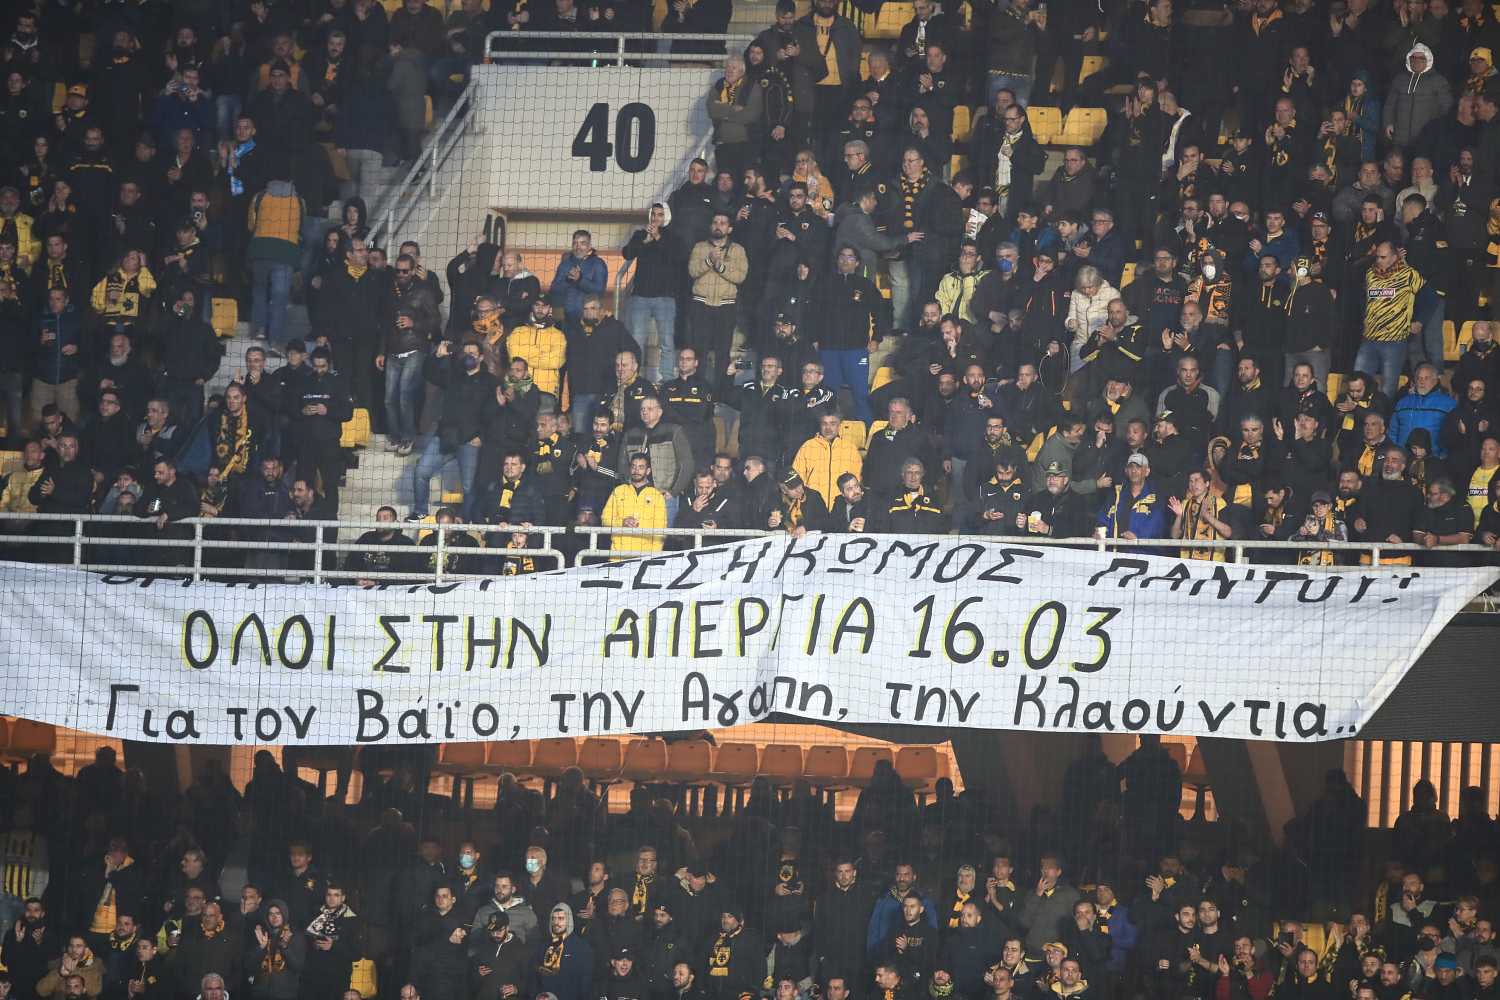 Πανό οπαδών της ΑΕΚ: «Όλοι στην απεργία 16/03. Για τον Βάιο, την Αγάπη, την Κλαούντια…»